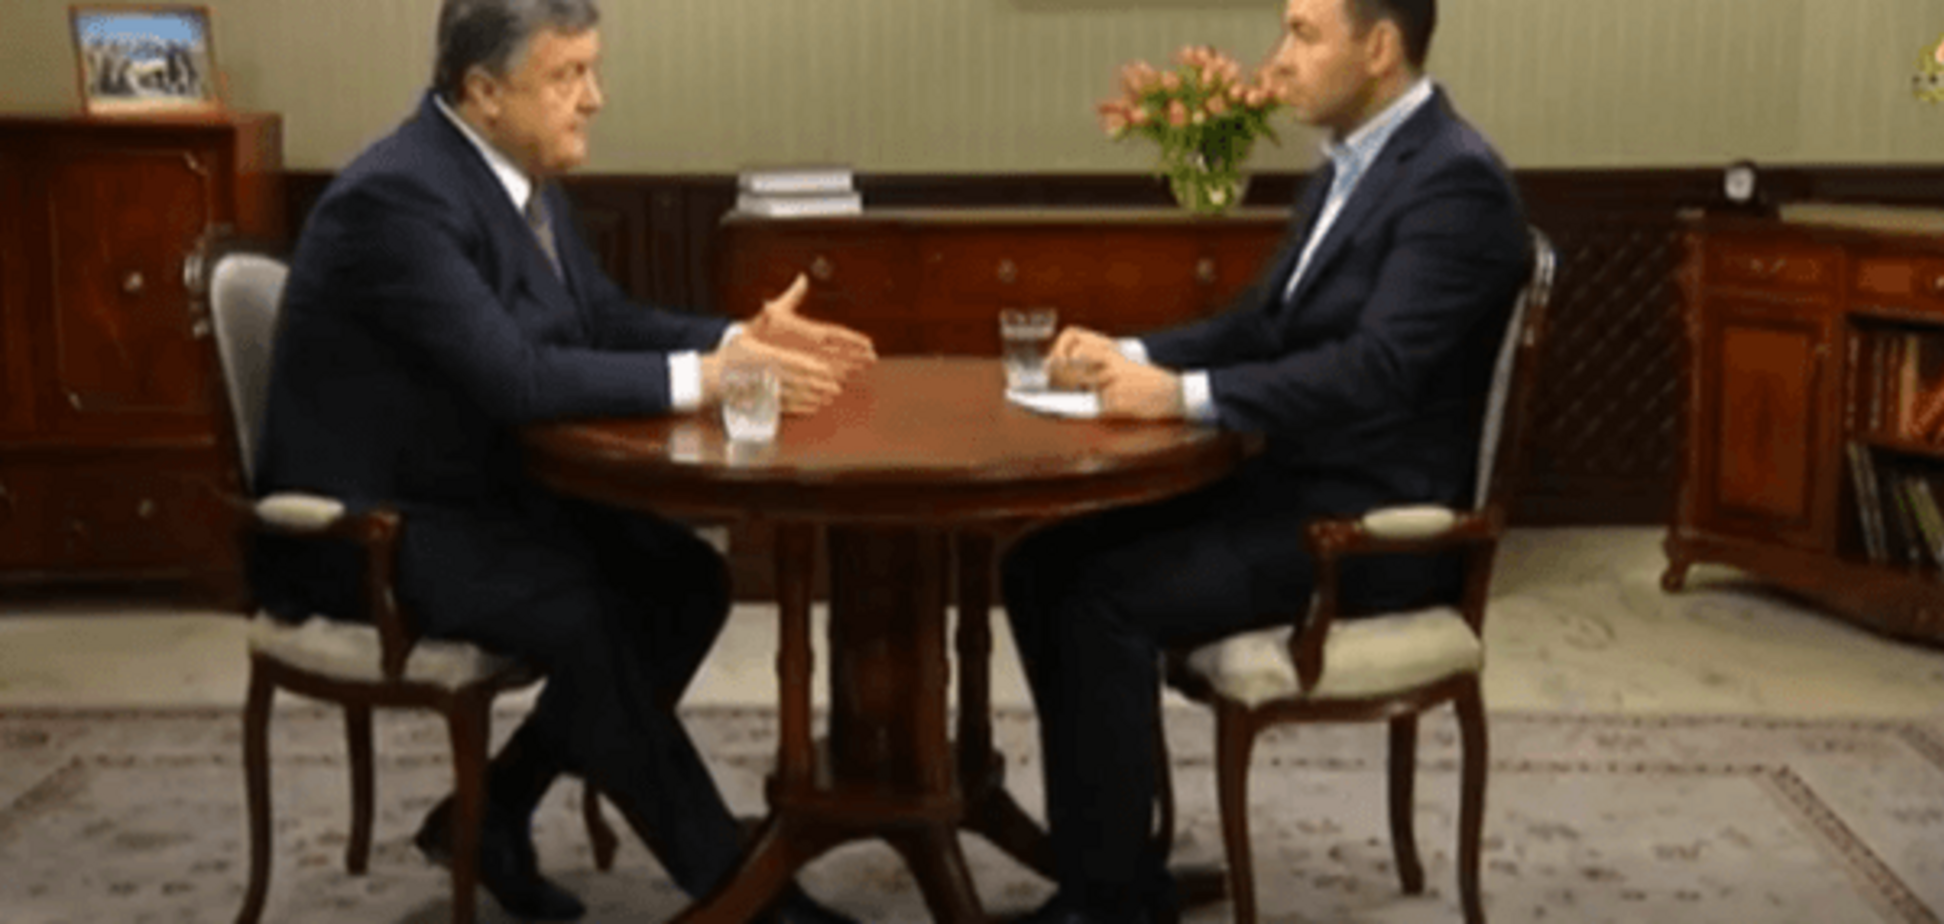 Порошенко объяснил, как безвизовый режим вернет Крым и Донбасс